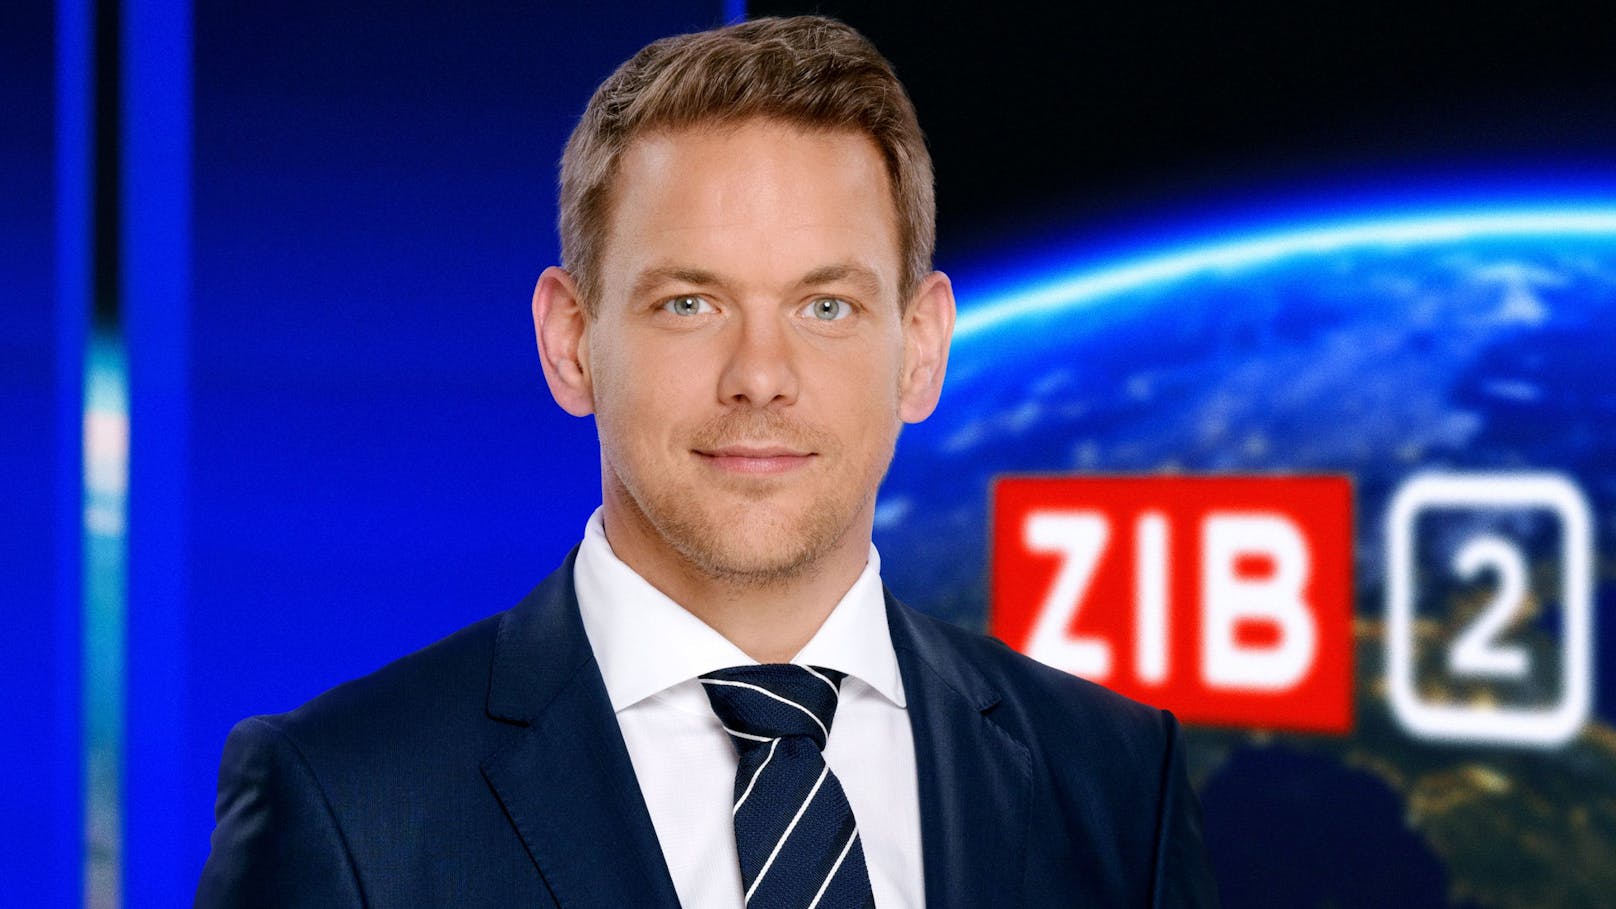 Martin Thür moderiert die ZIB2 im ORF.